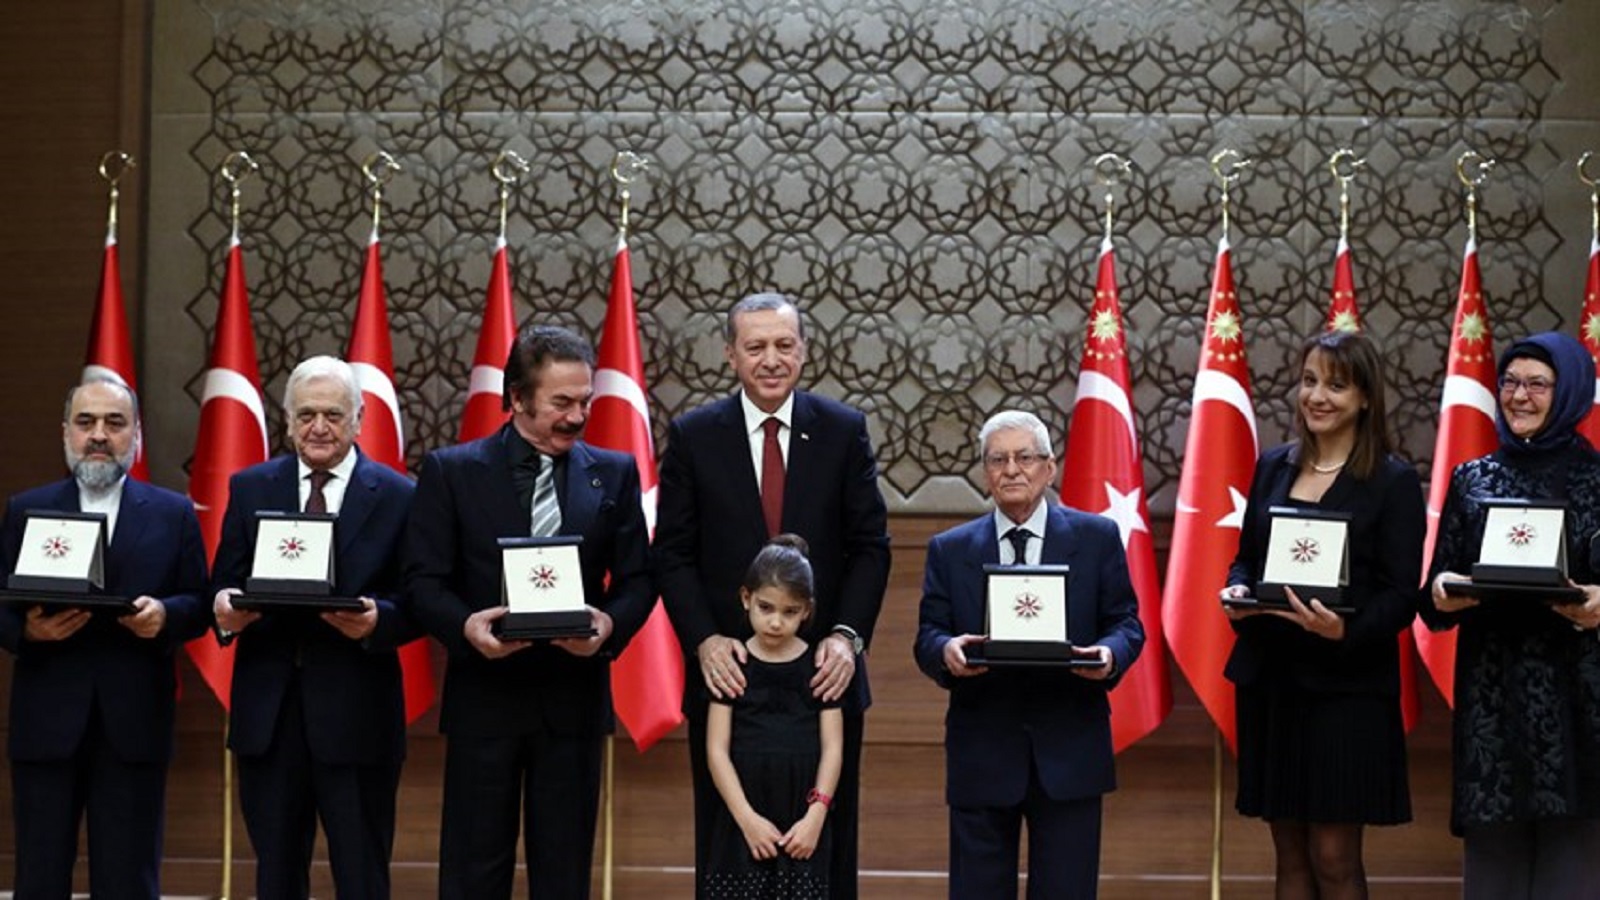 المعارضة التركية عن "جوائز الفن والثقافة": السلطة تكرّم أفكارها!